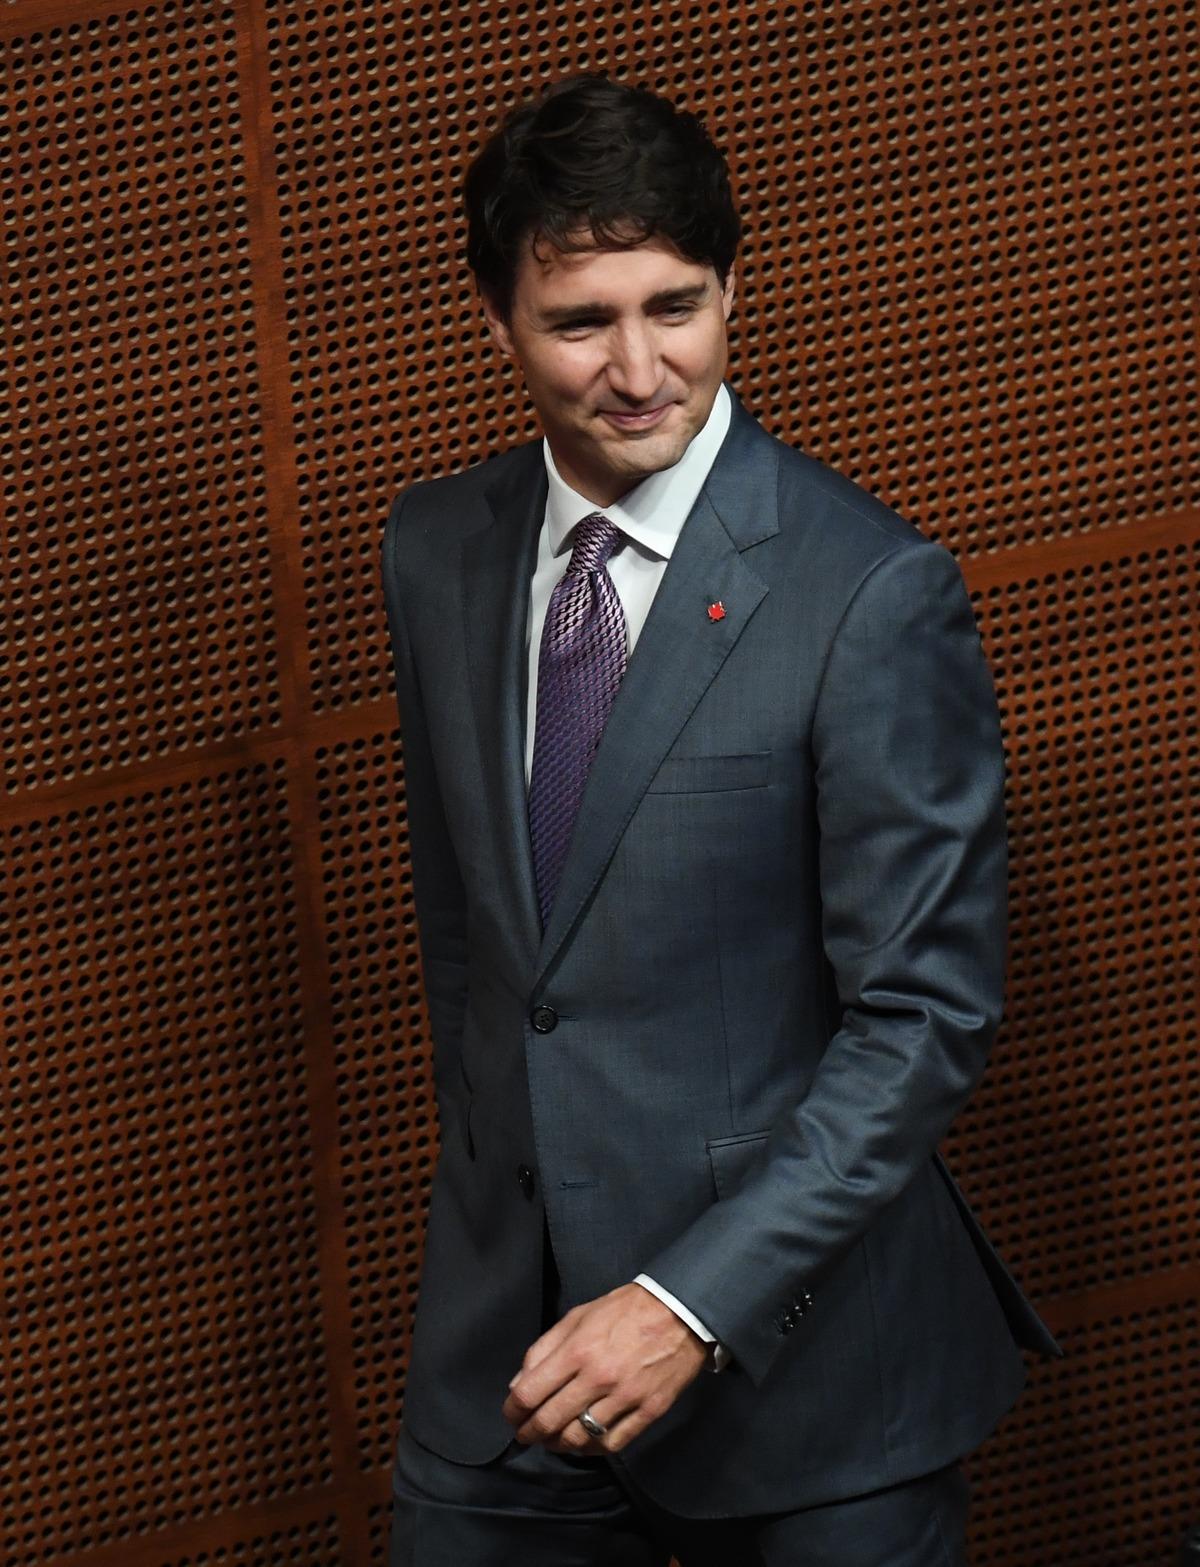 Trudeau met le cap sur le forum de l’APEC